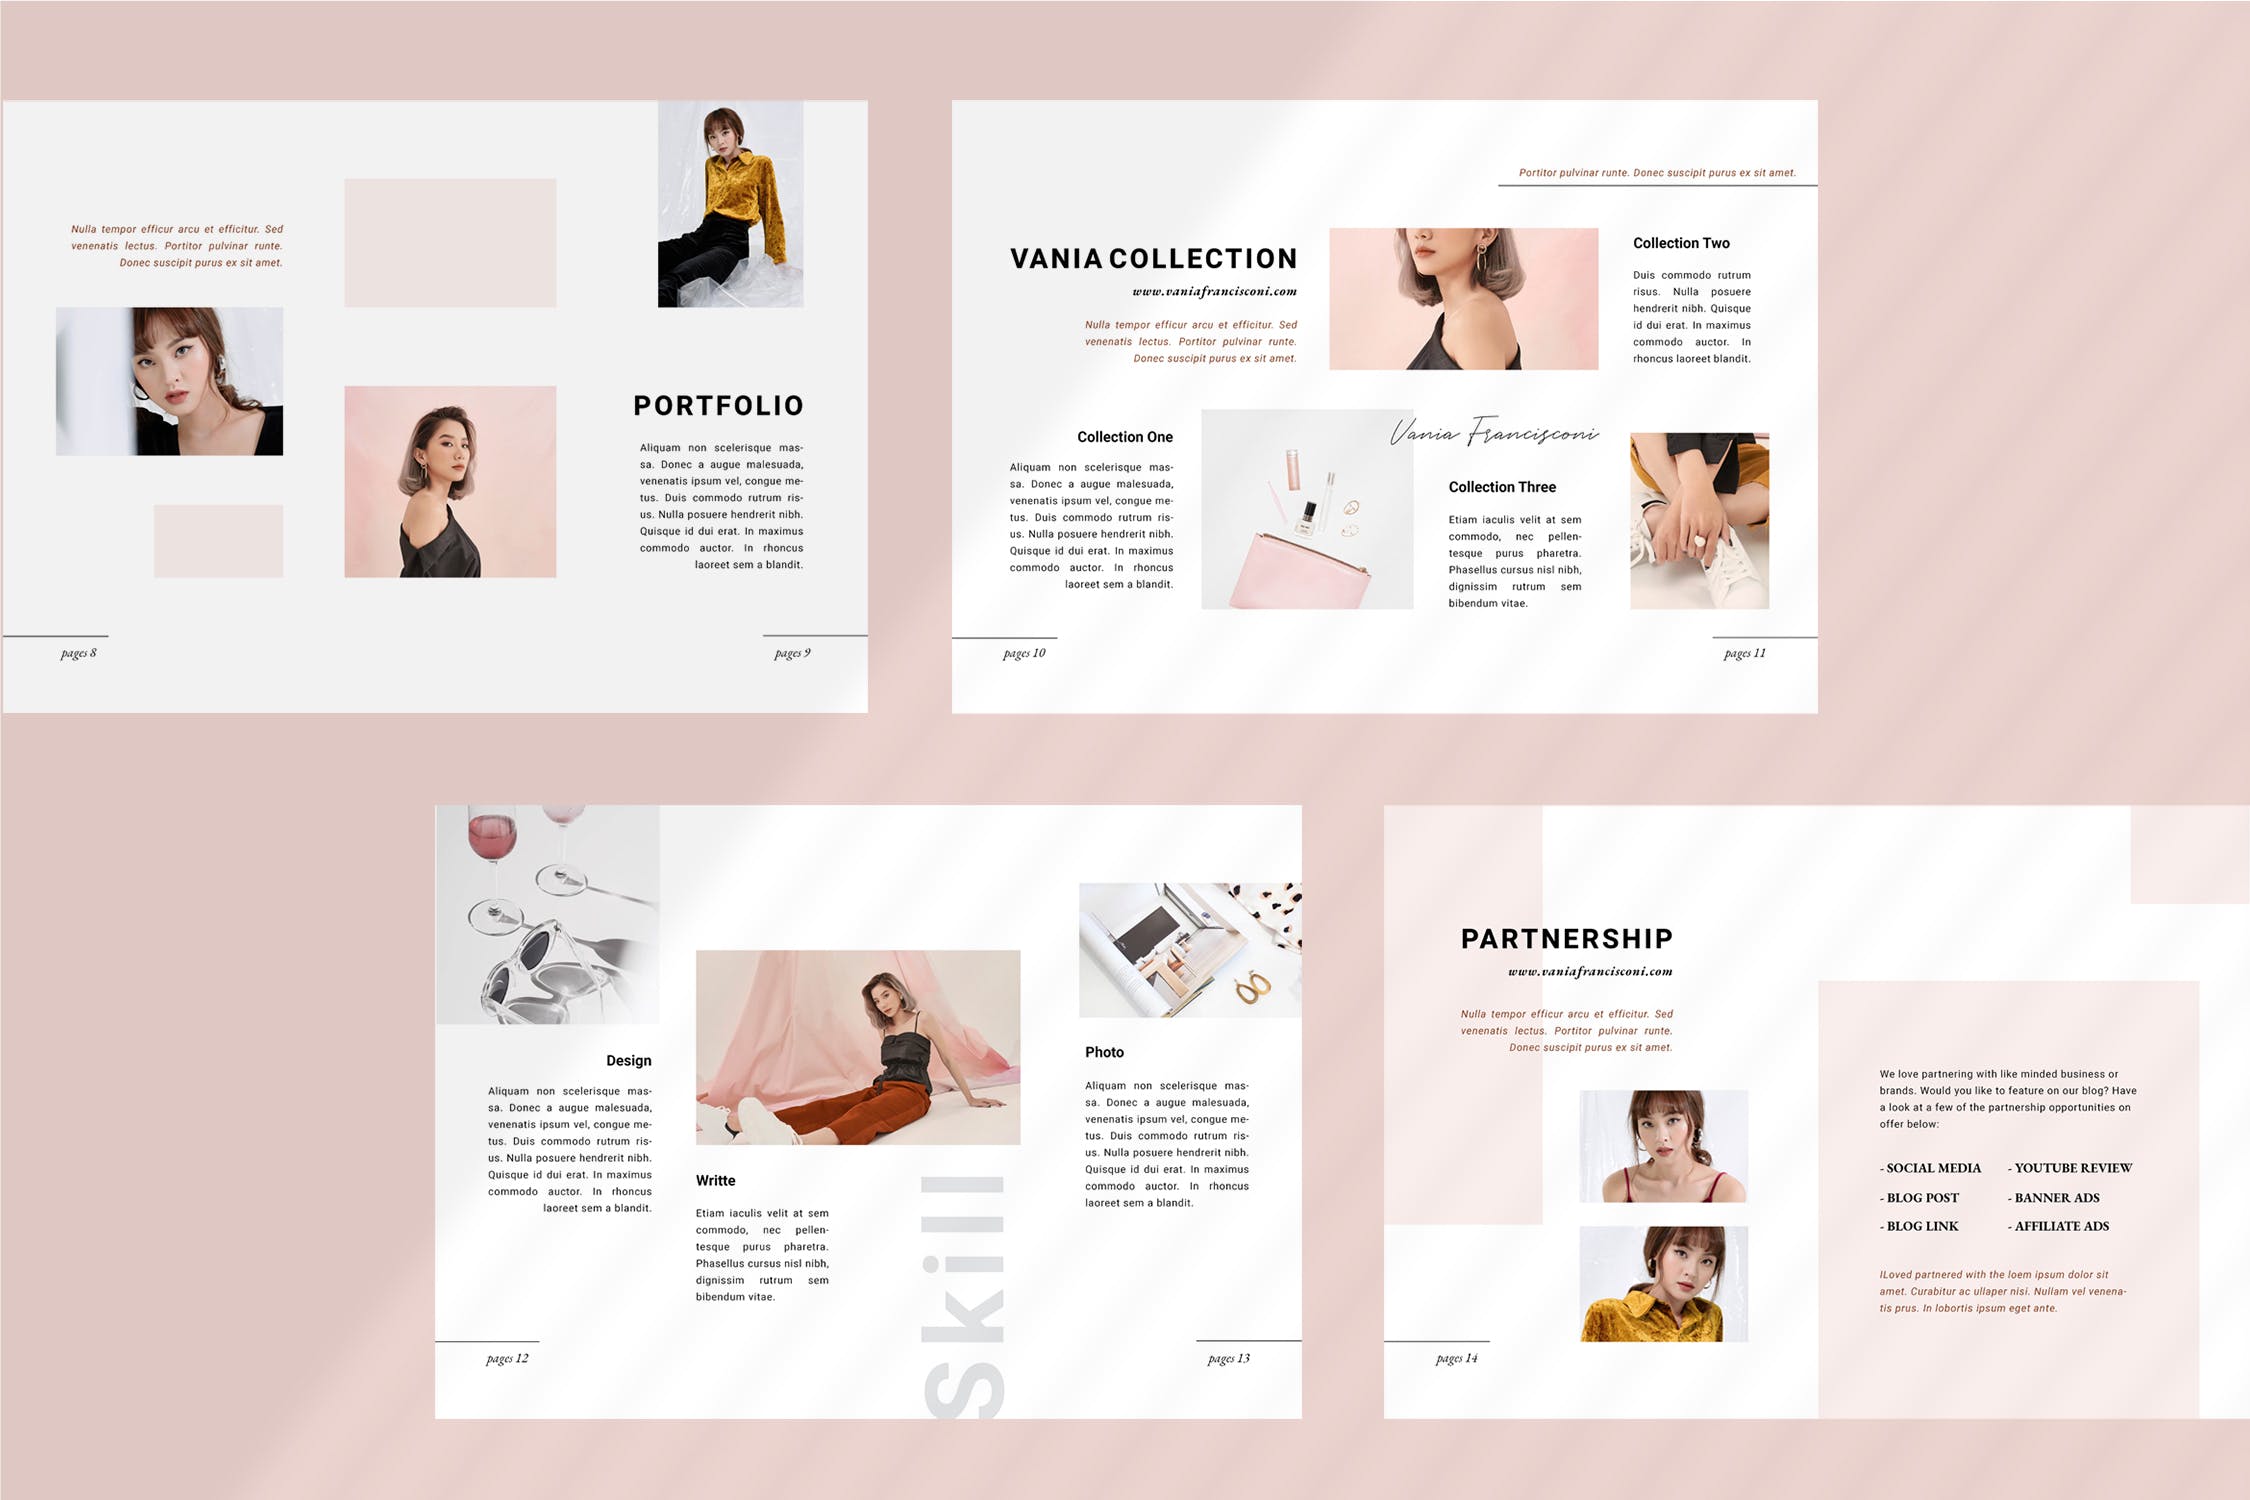 优雅时尚博客媒体品牌宣传设计素材工具包 Vania Media / Press Kit Template插图4